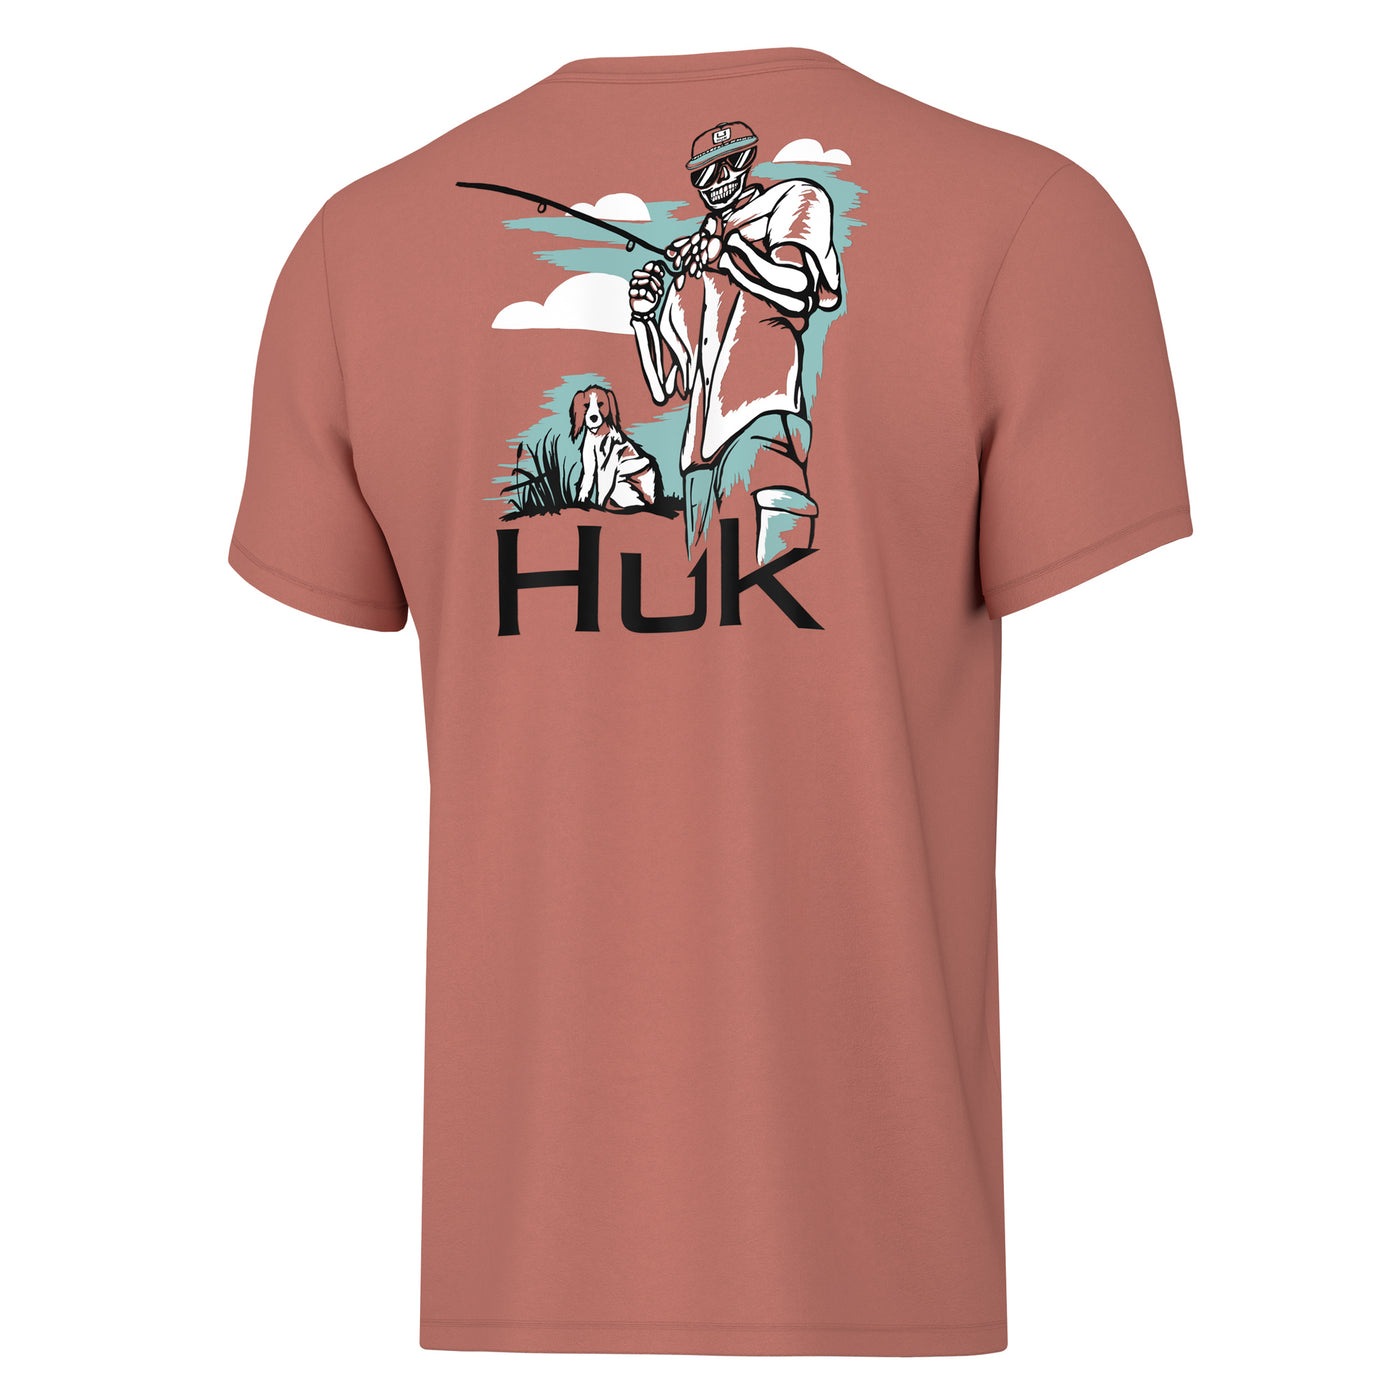 Huk Kids Fletch n Bone Tee – Huk Gear